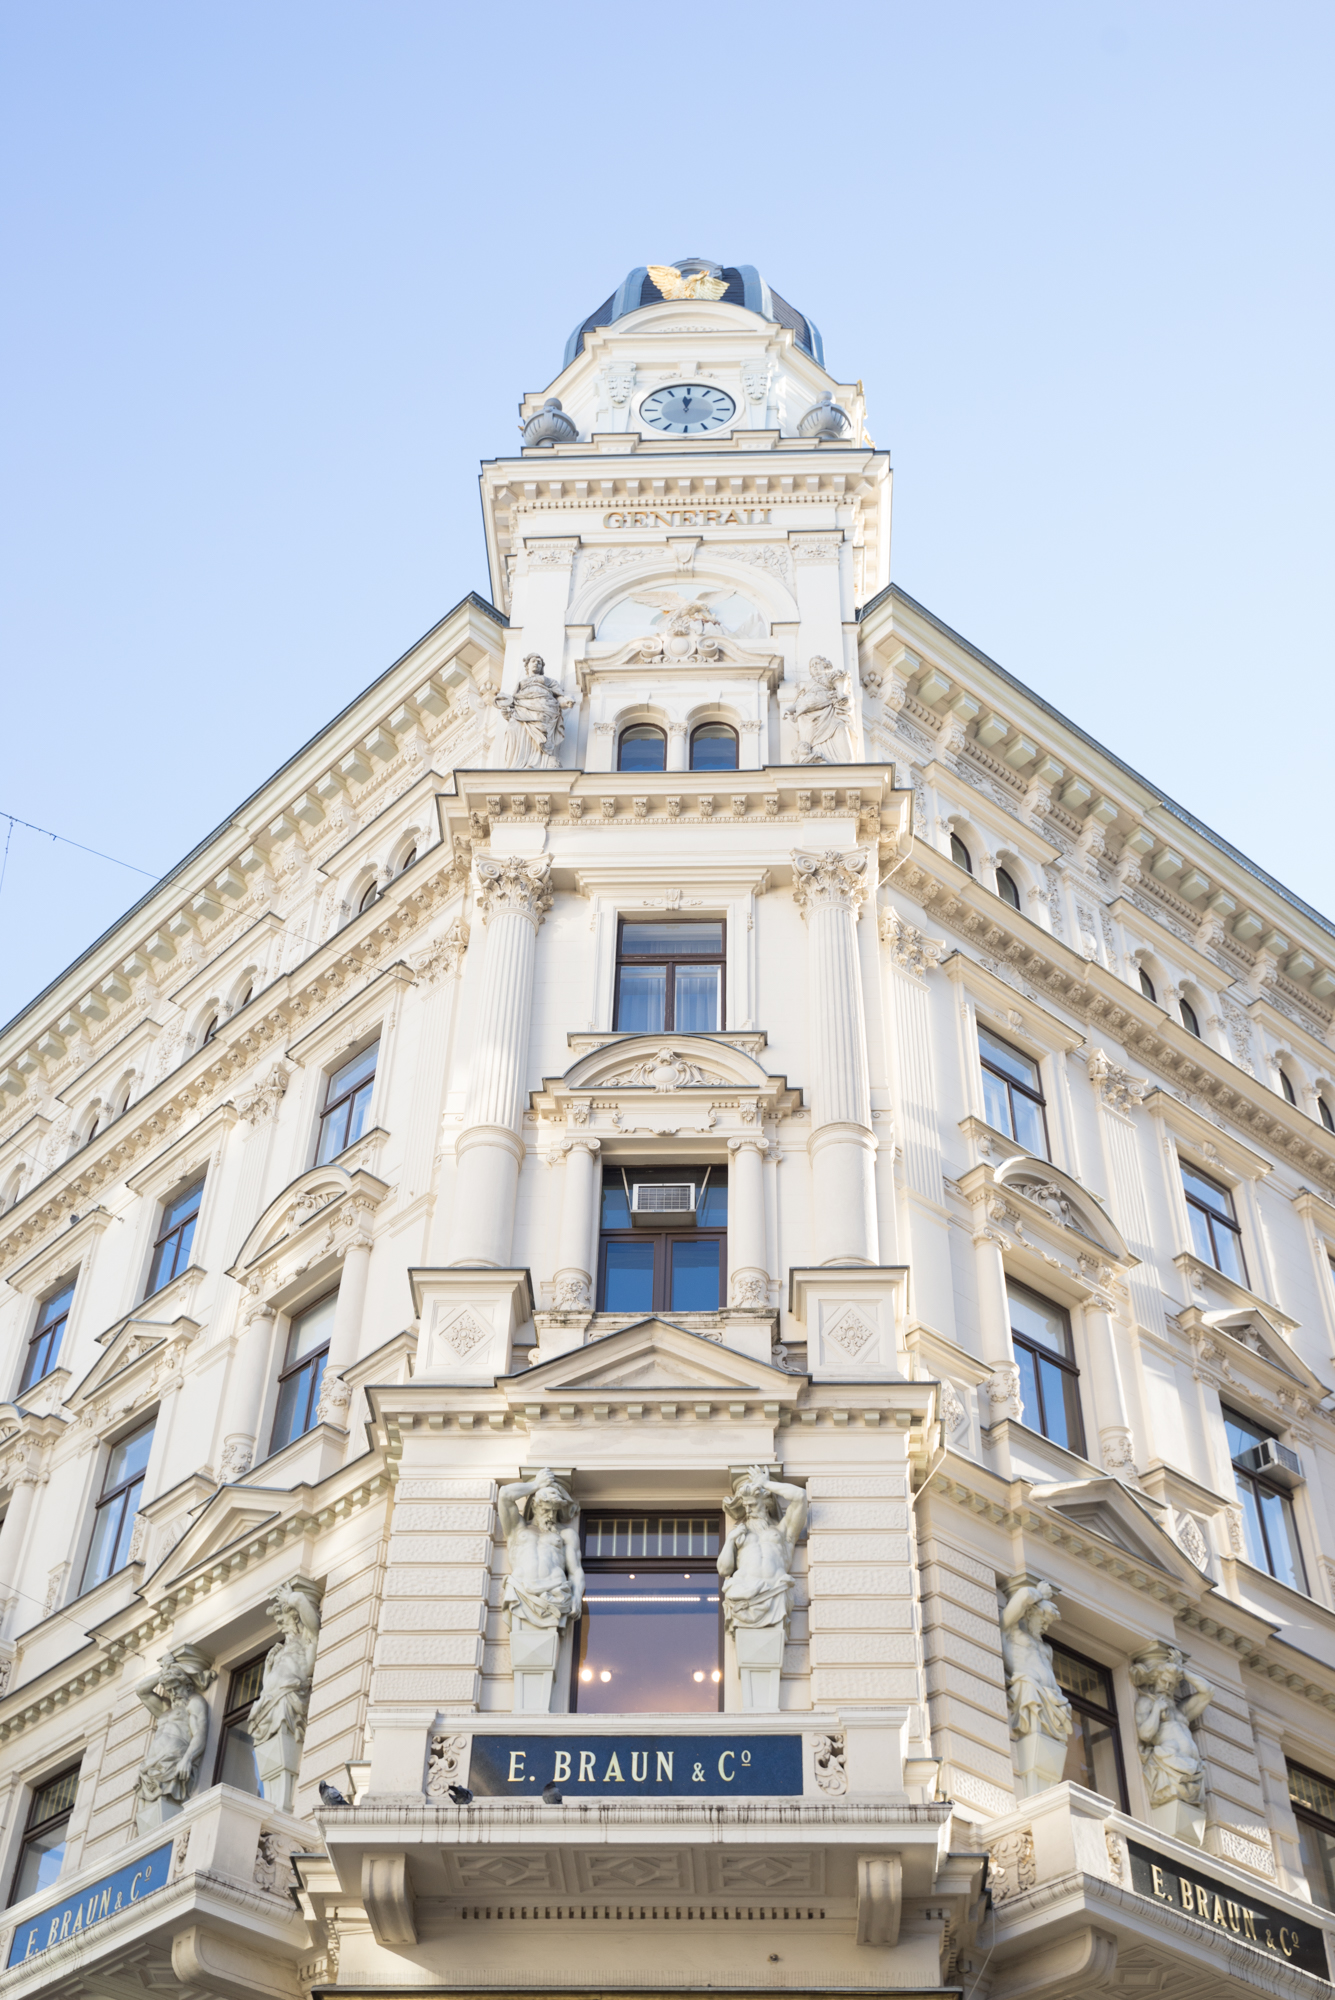 A classical facade in the citycenter